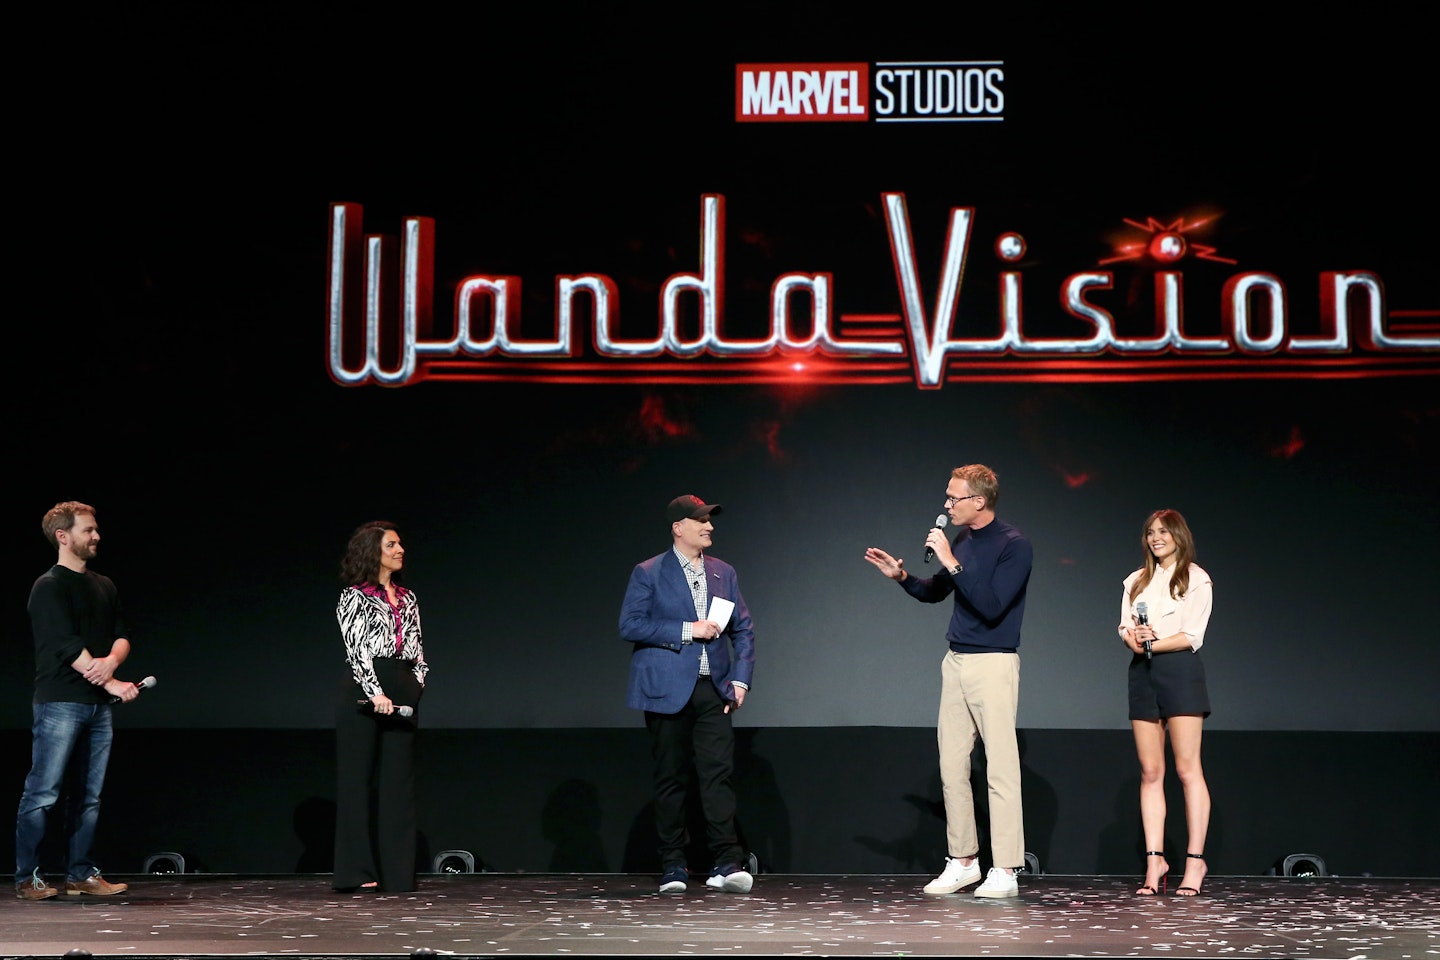 WandaVision came to Disney Plus